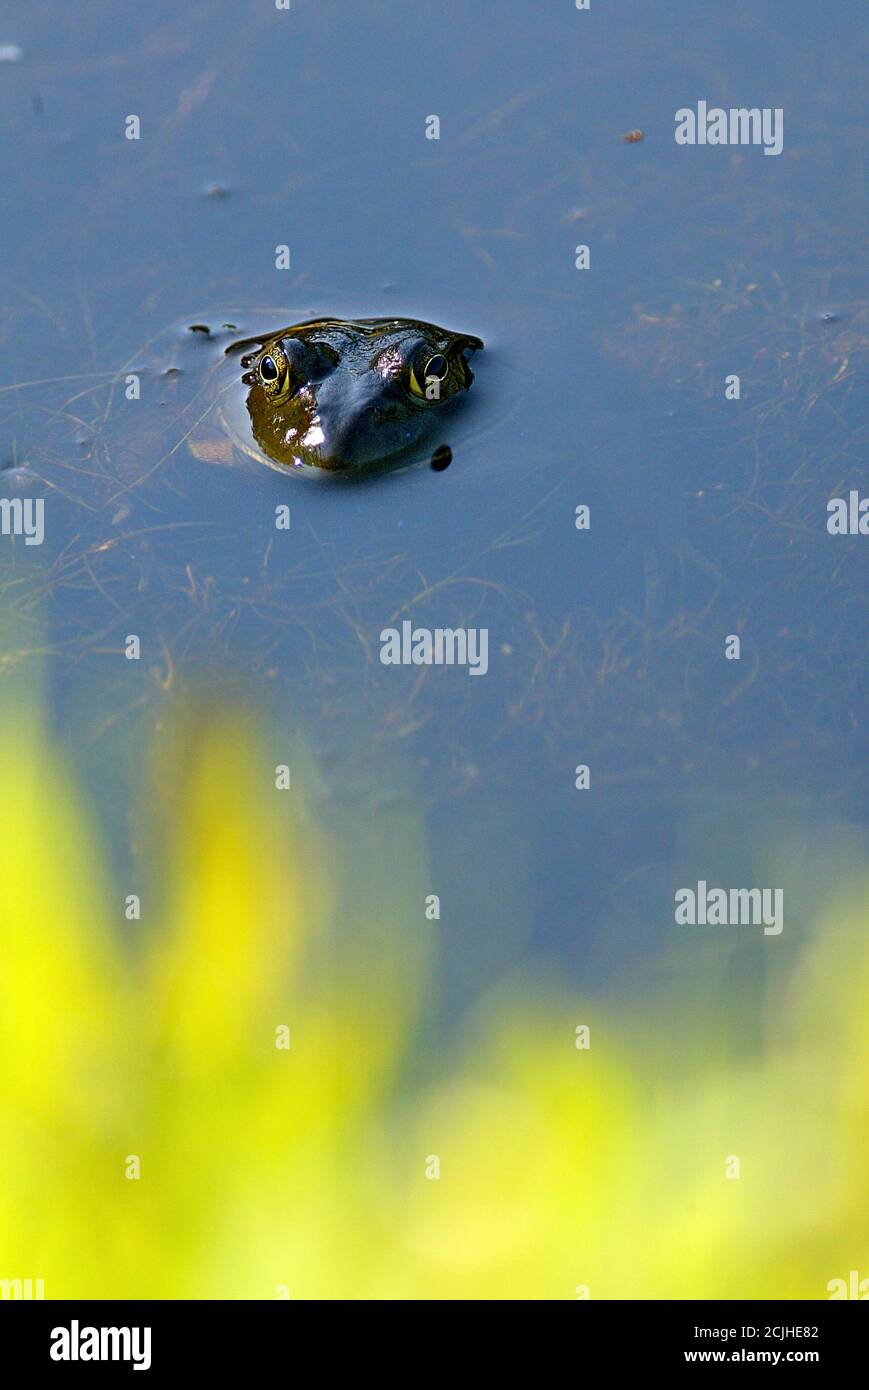 Bullfrog in its natural environment. Stock Photo